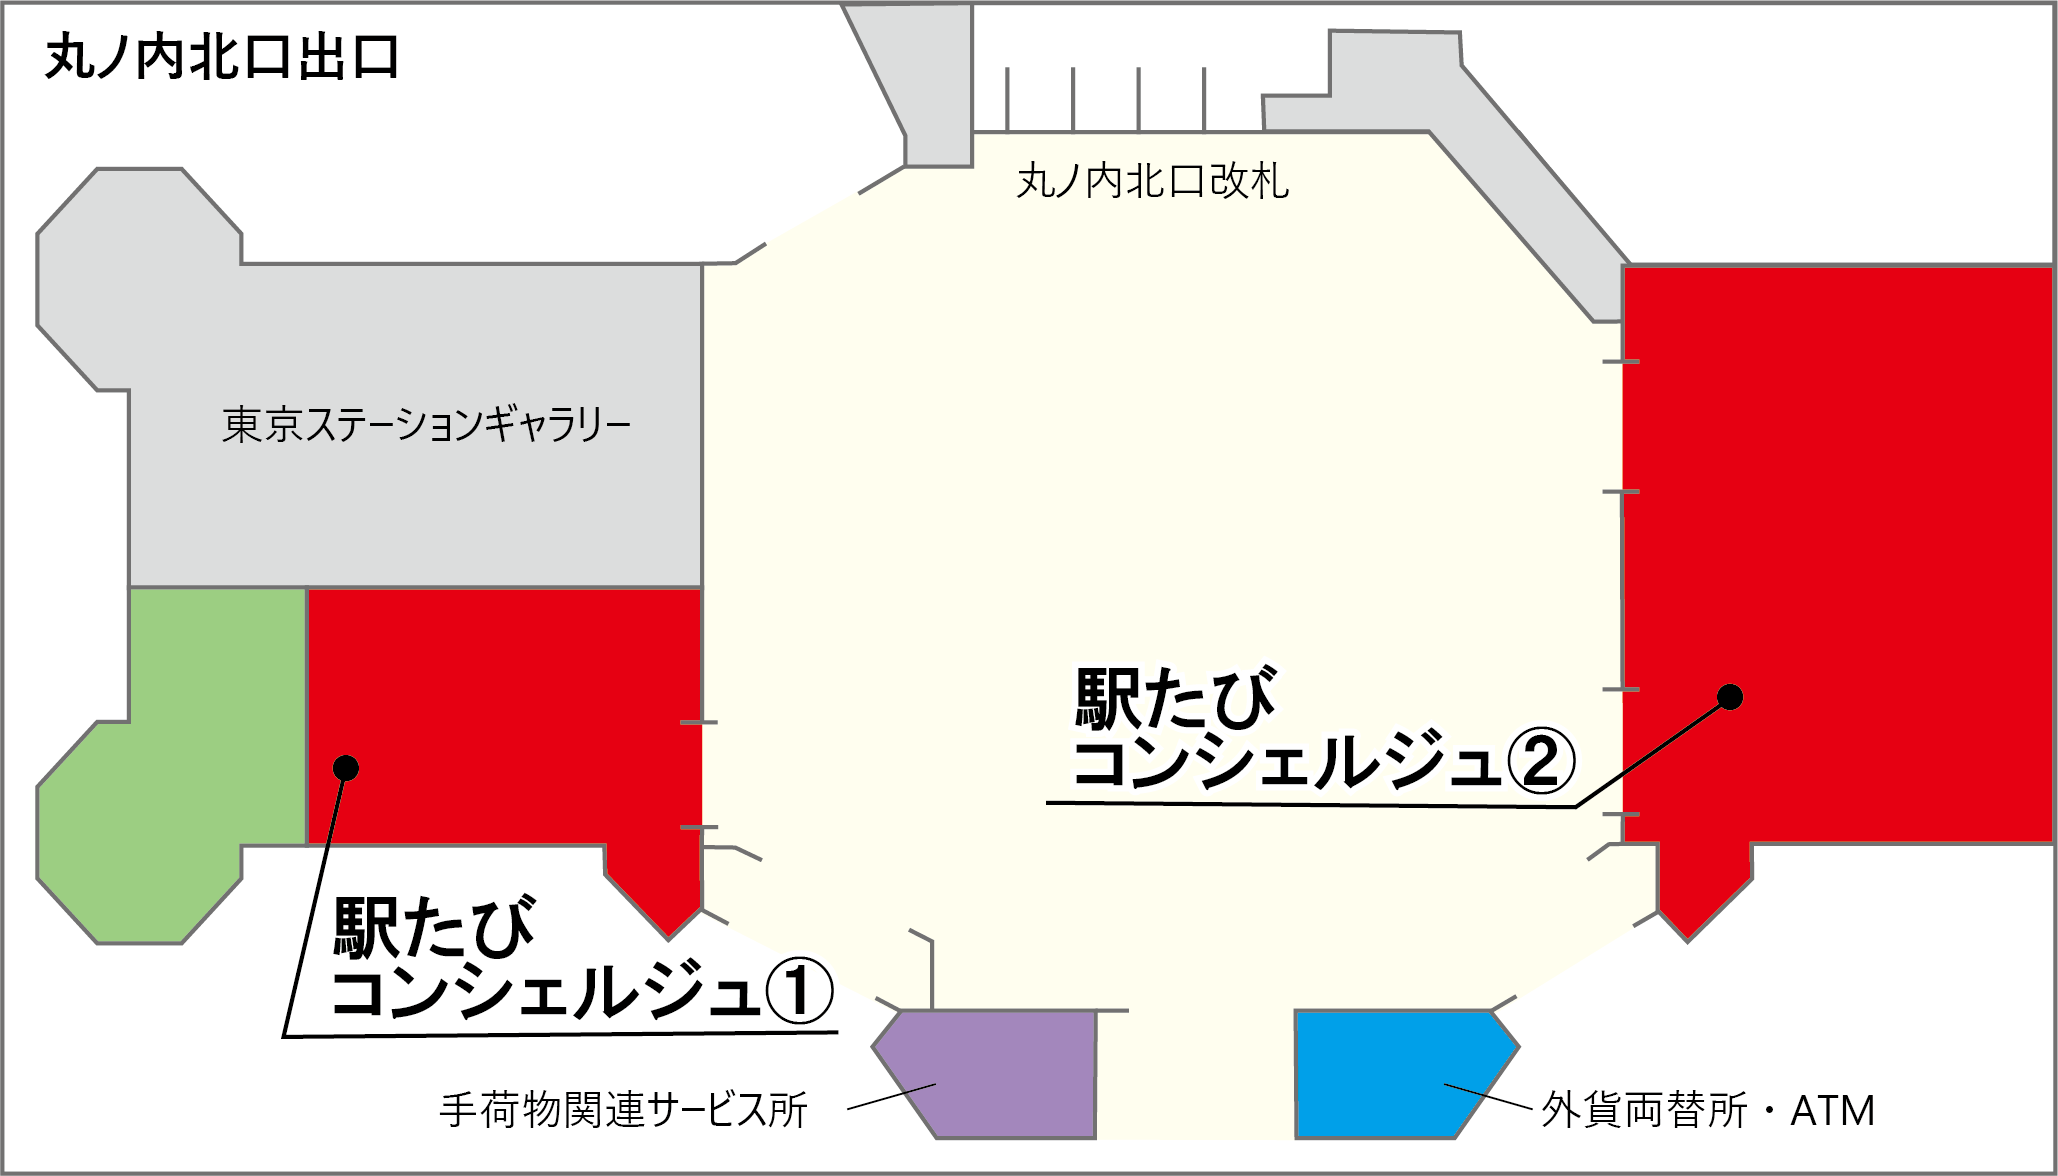 東京駅マップ　駅たびコンシェルジュ東京は、同一名称で2店舗に分かれておりそれぞれ営業時間が異なります。